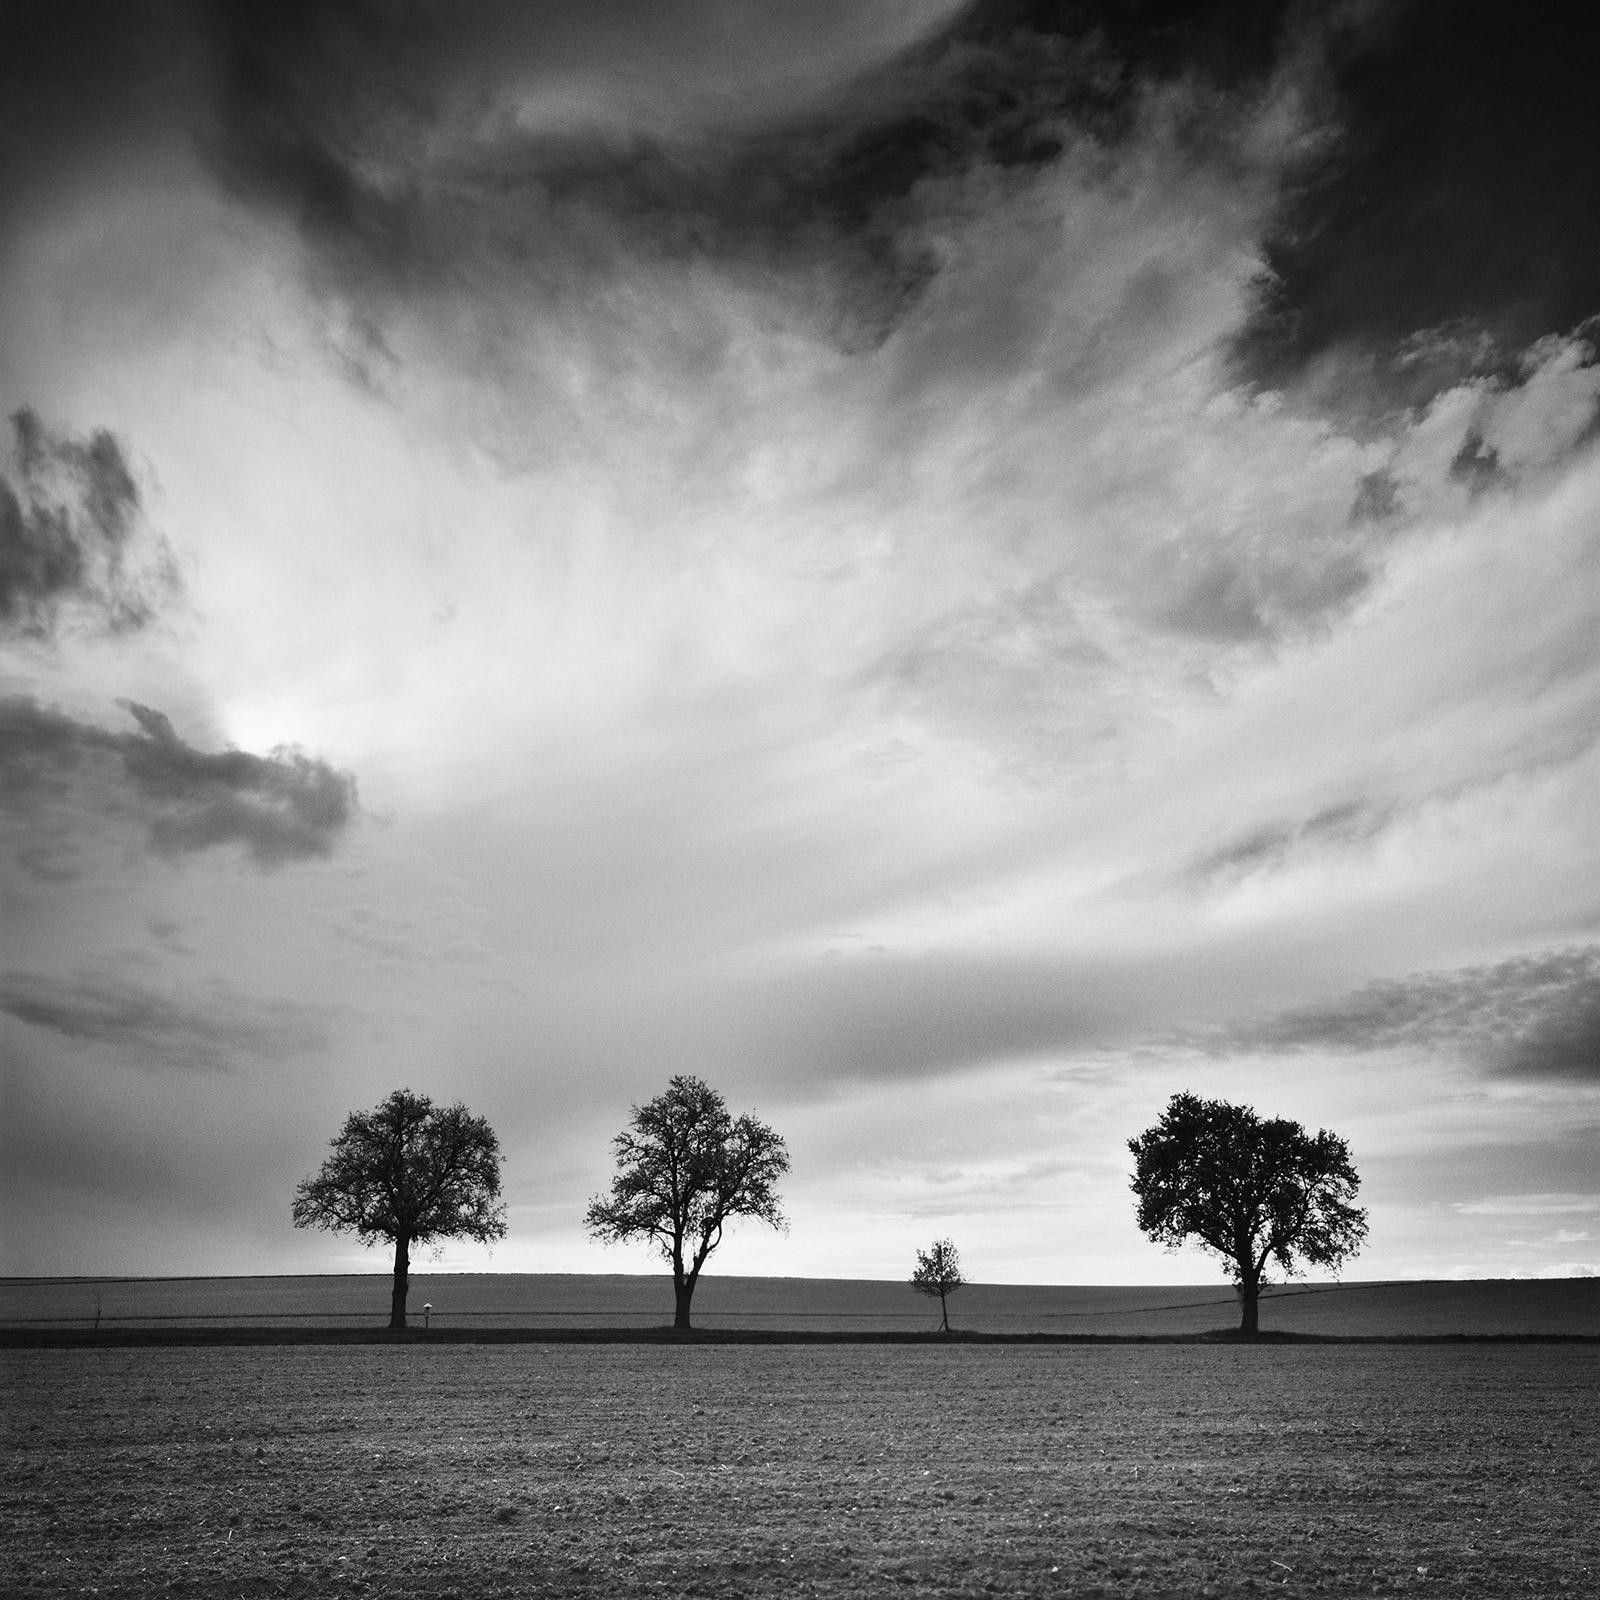 Dreieinhalb Baum, sehr wolkenverhangen, Sturm, Schwarz-Weiß-Landschaftsfotografie